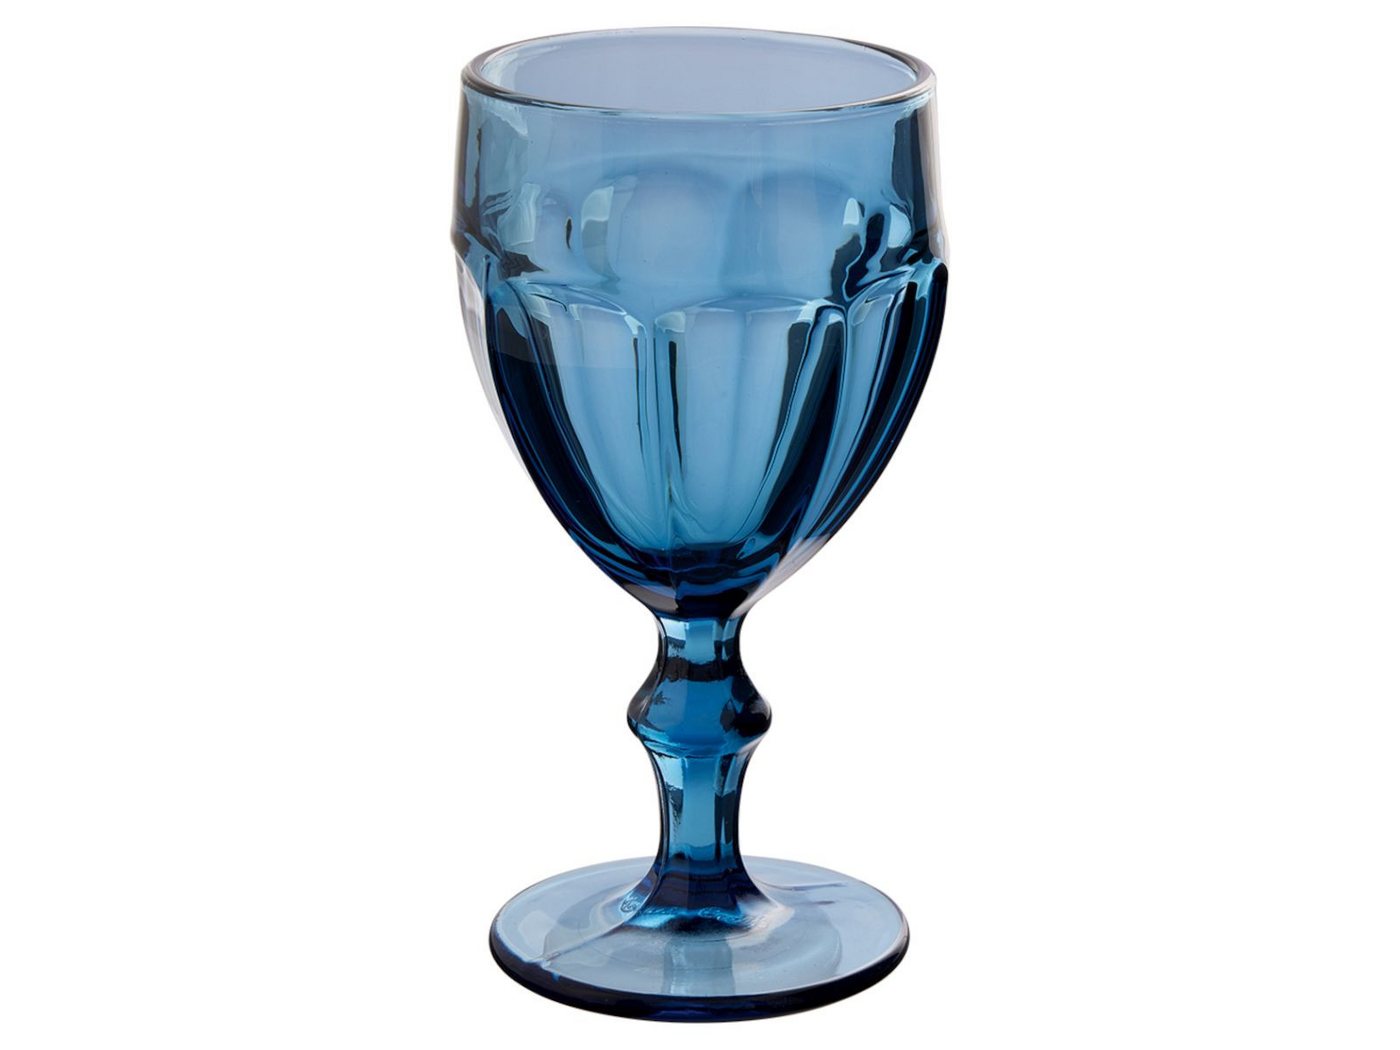 Greengate Weinglas Weinglas dunkelblau 17cm, Glas von Greengate